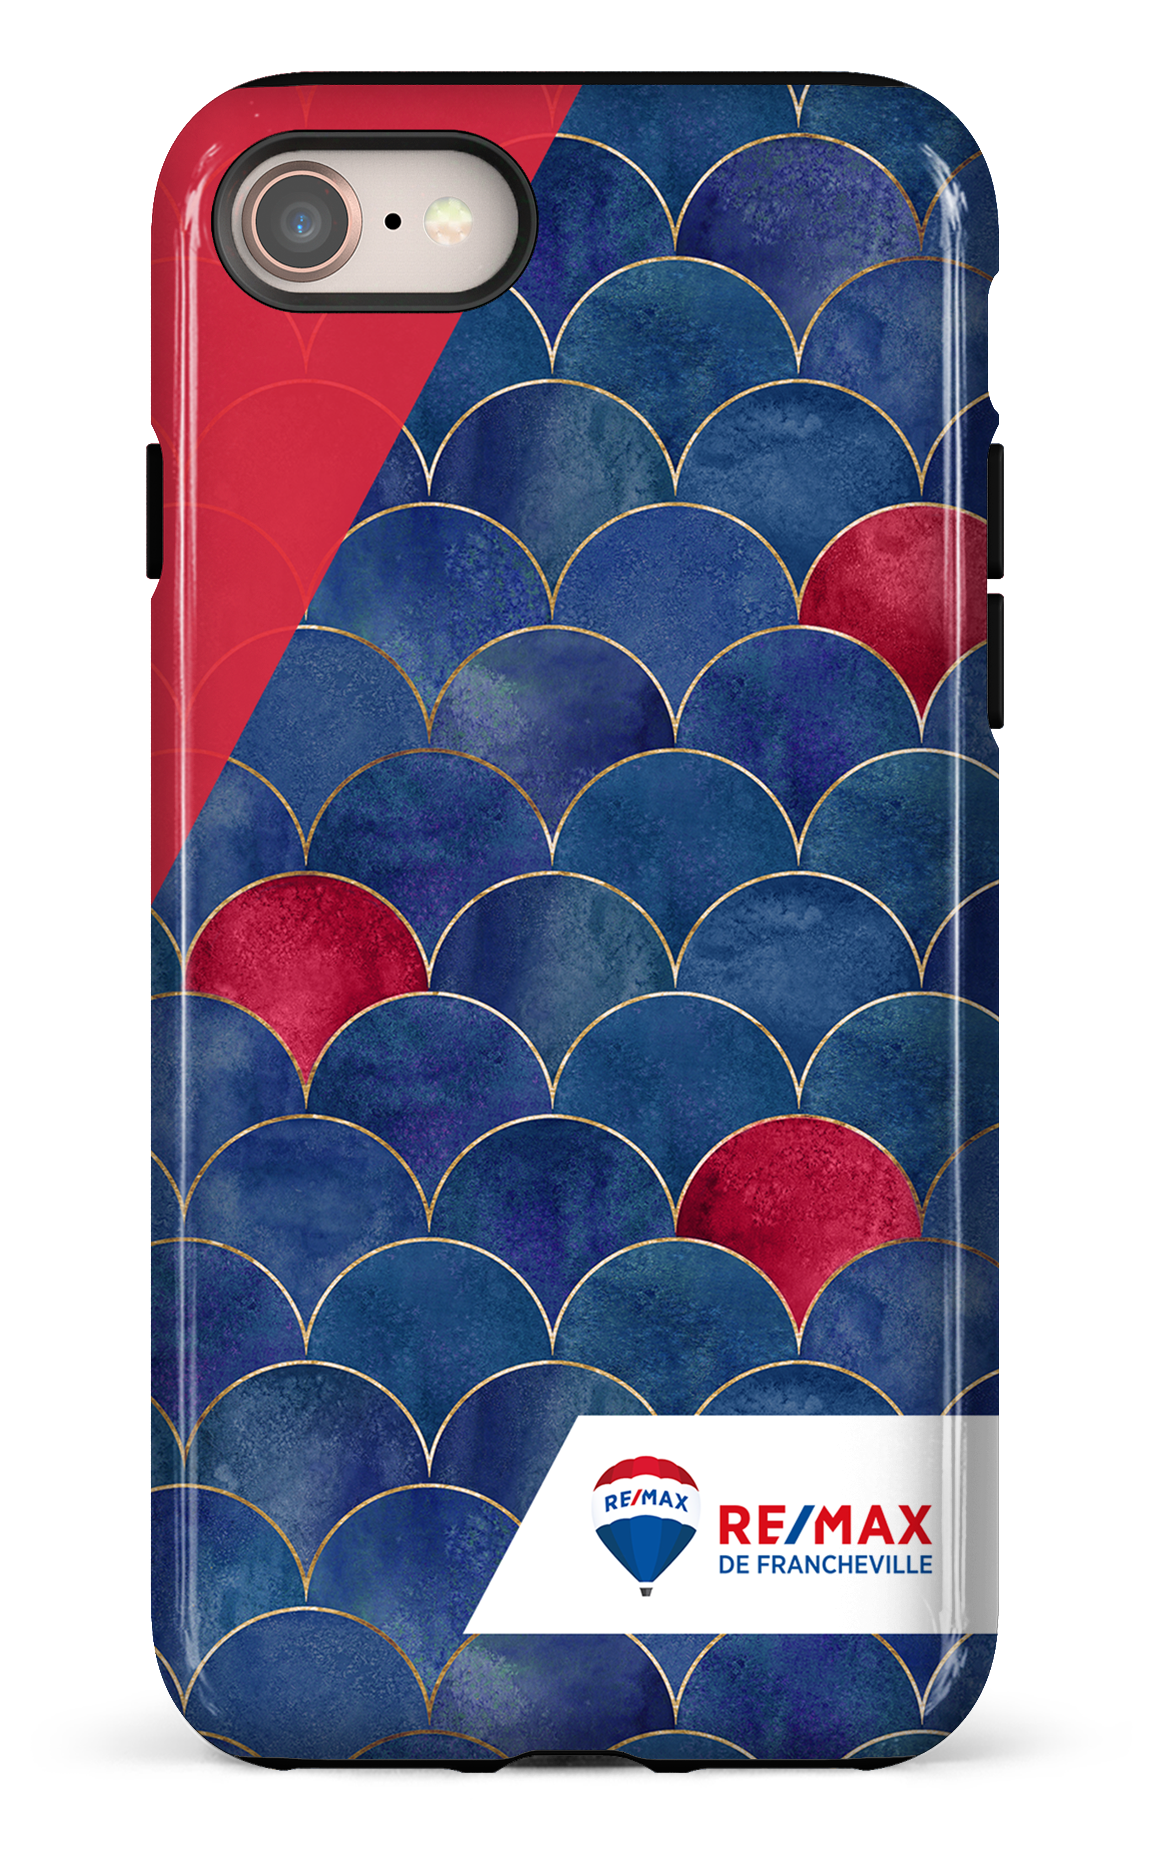 Écailles bicolores de Francheville - iPhone 8